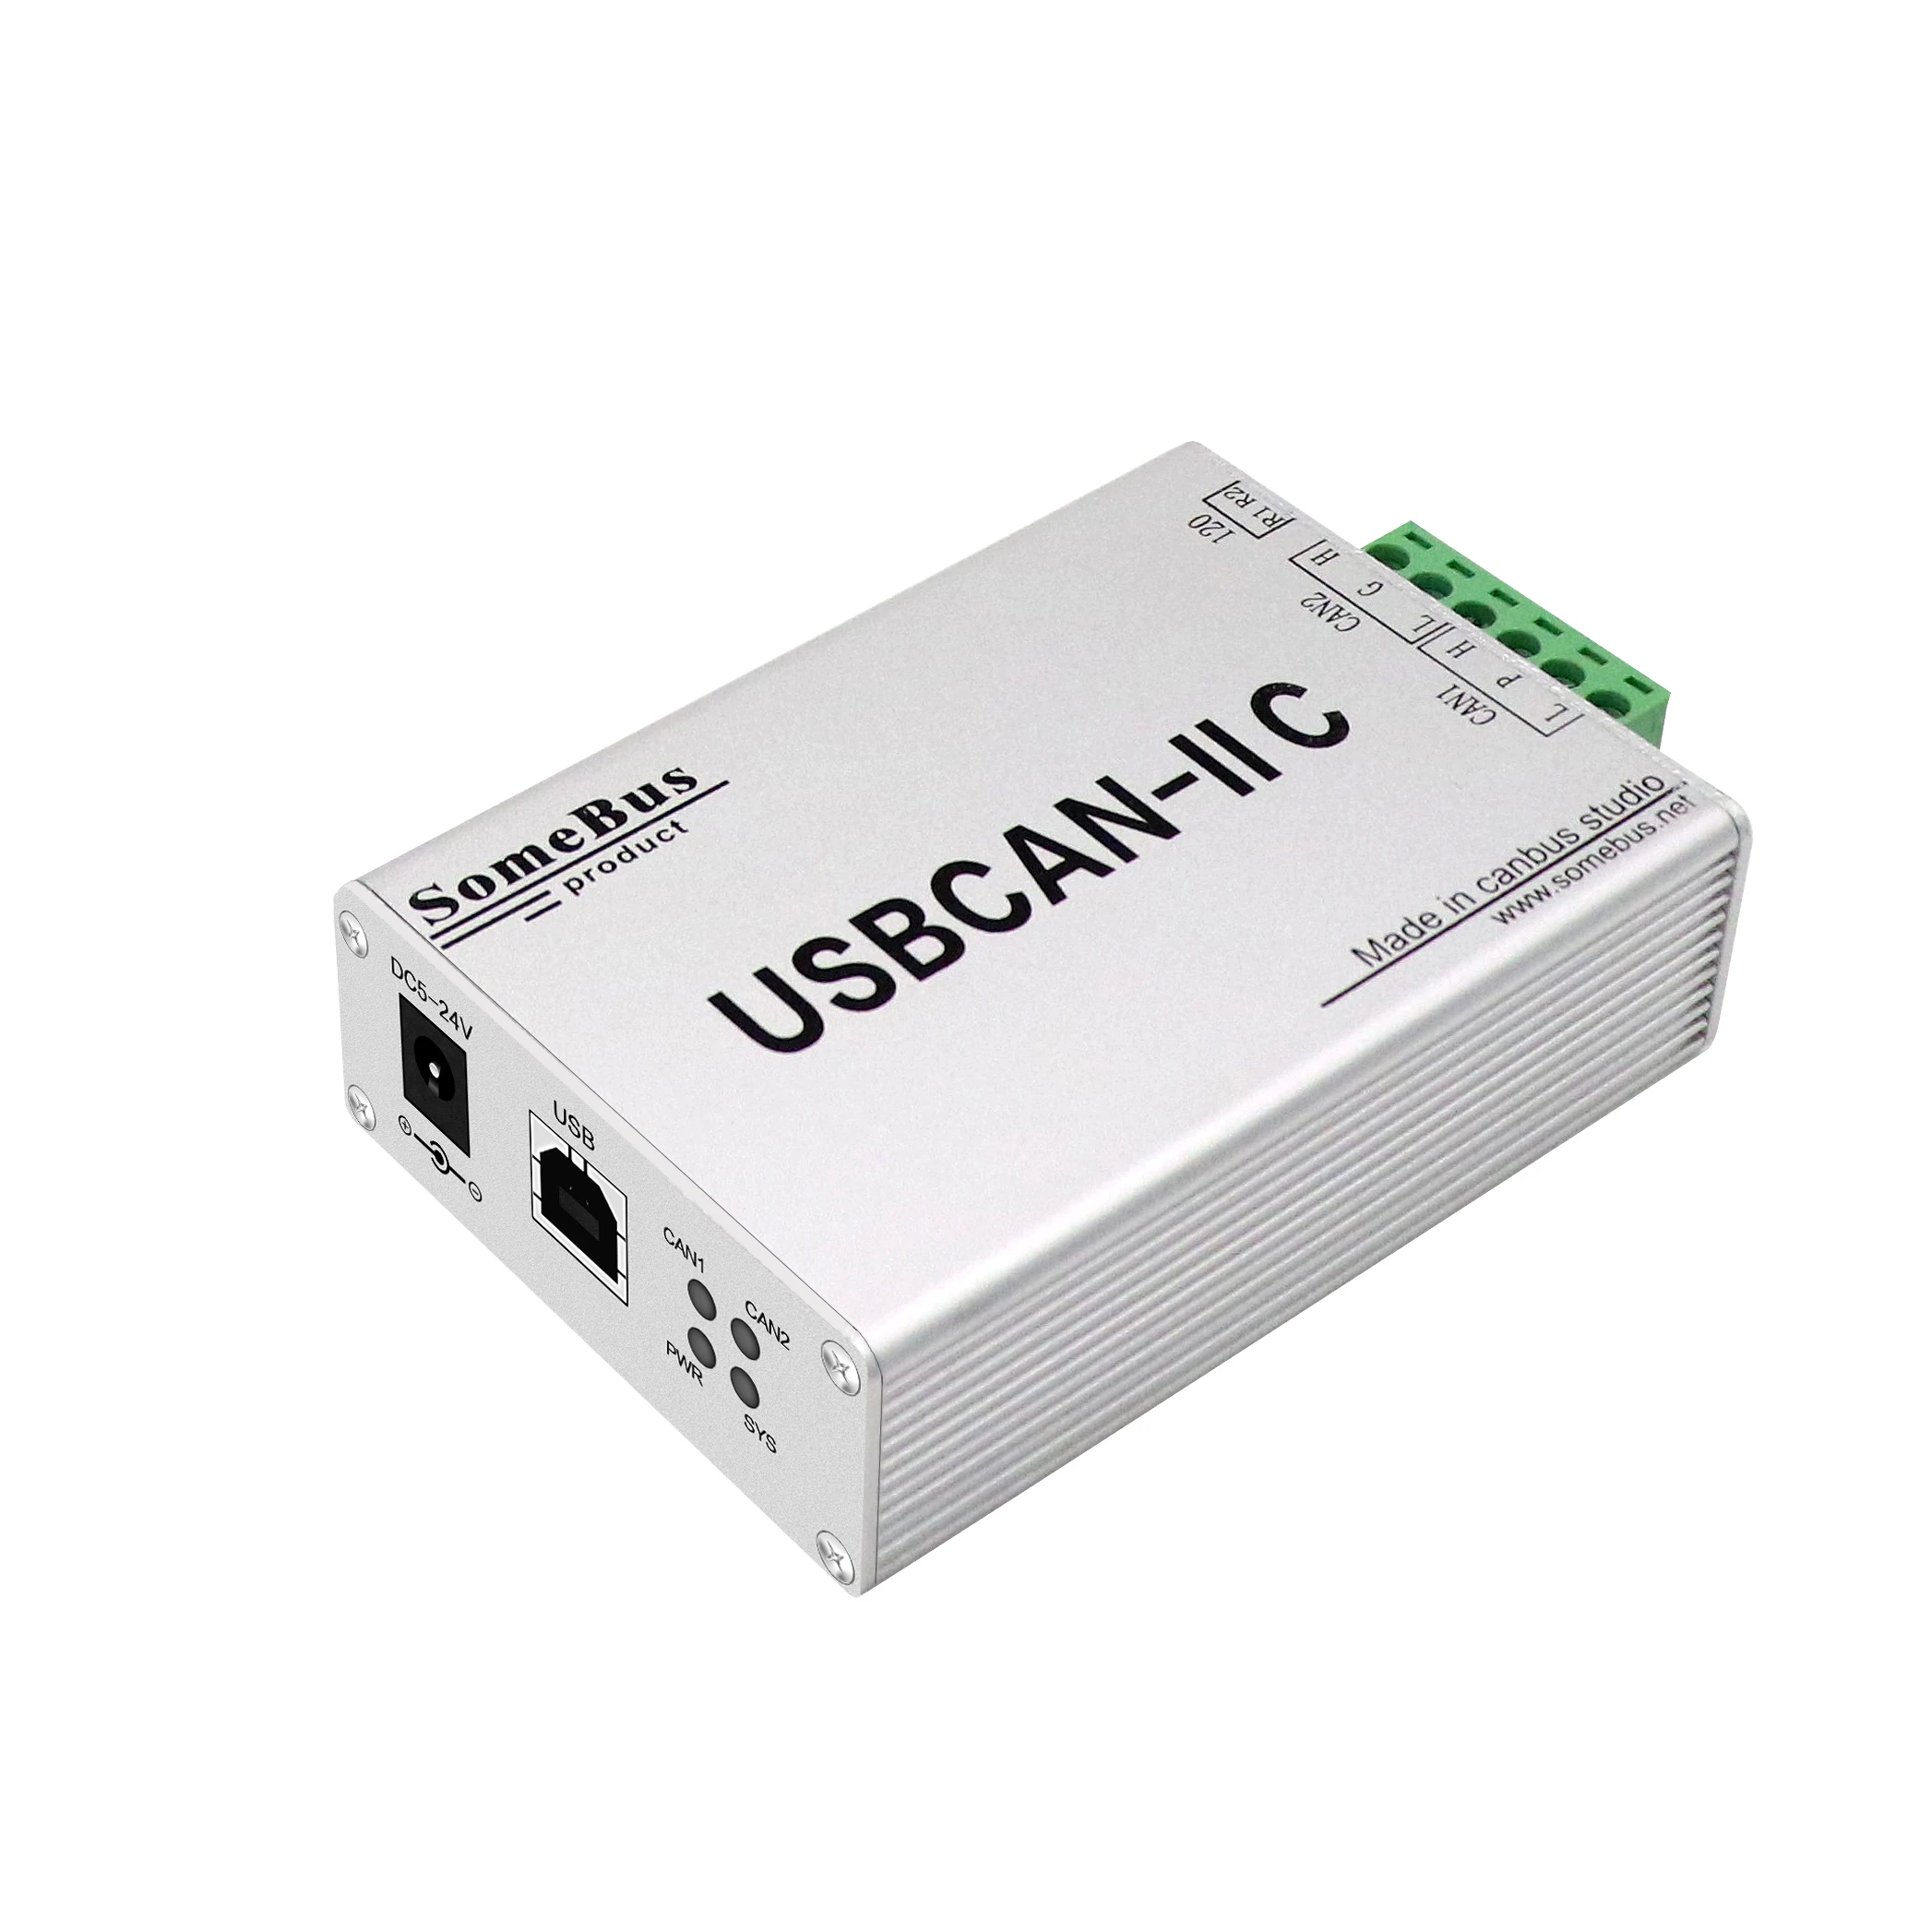 GCAN USBCAN-II C, GALI-miesto komunikacijos sąsajos plokštė,Pramonės kontrolės įranga, Aukšto greičio, didelių duomenų perdavimo.